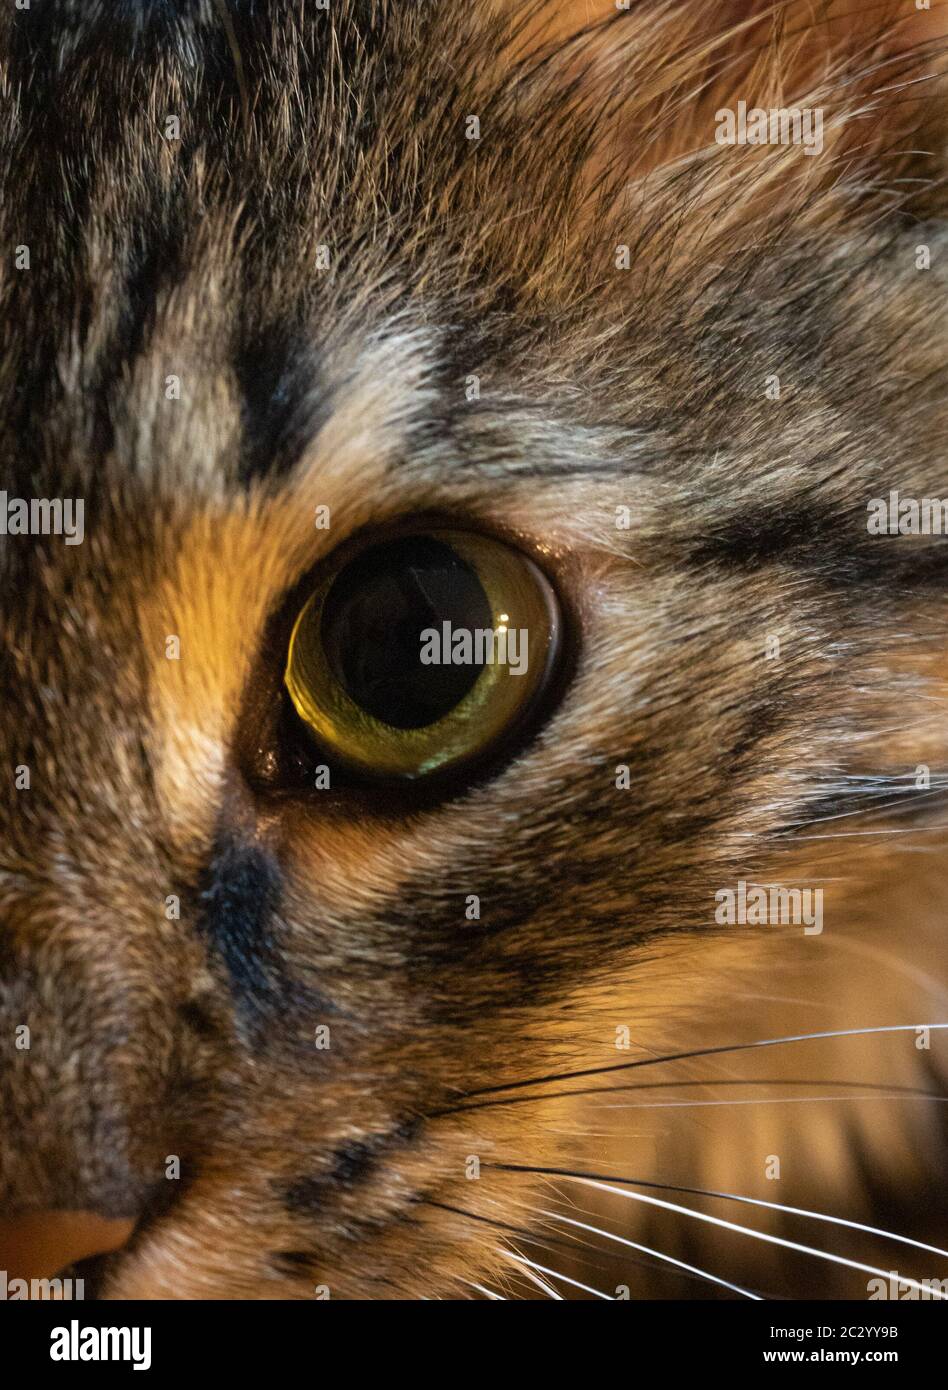 Closeup half face of a beautiful street cat Stock Photo